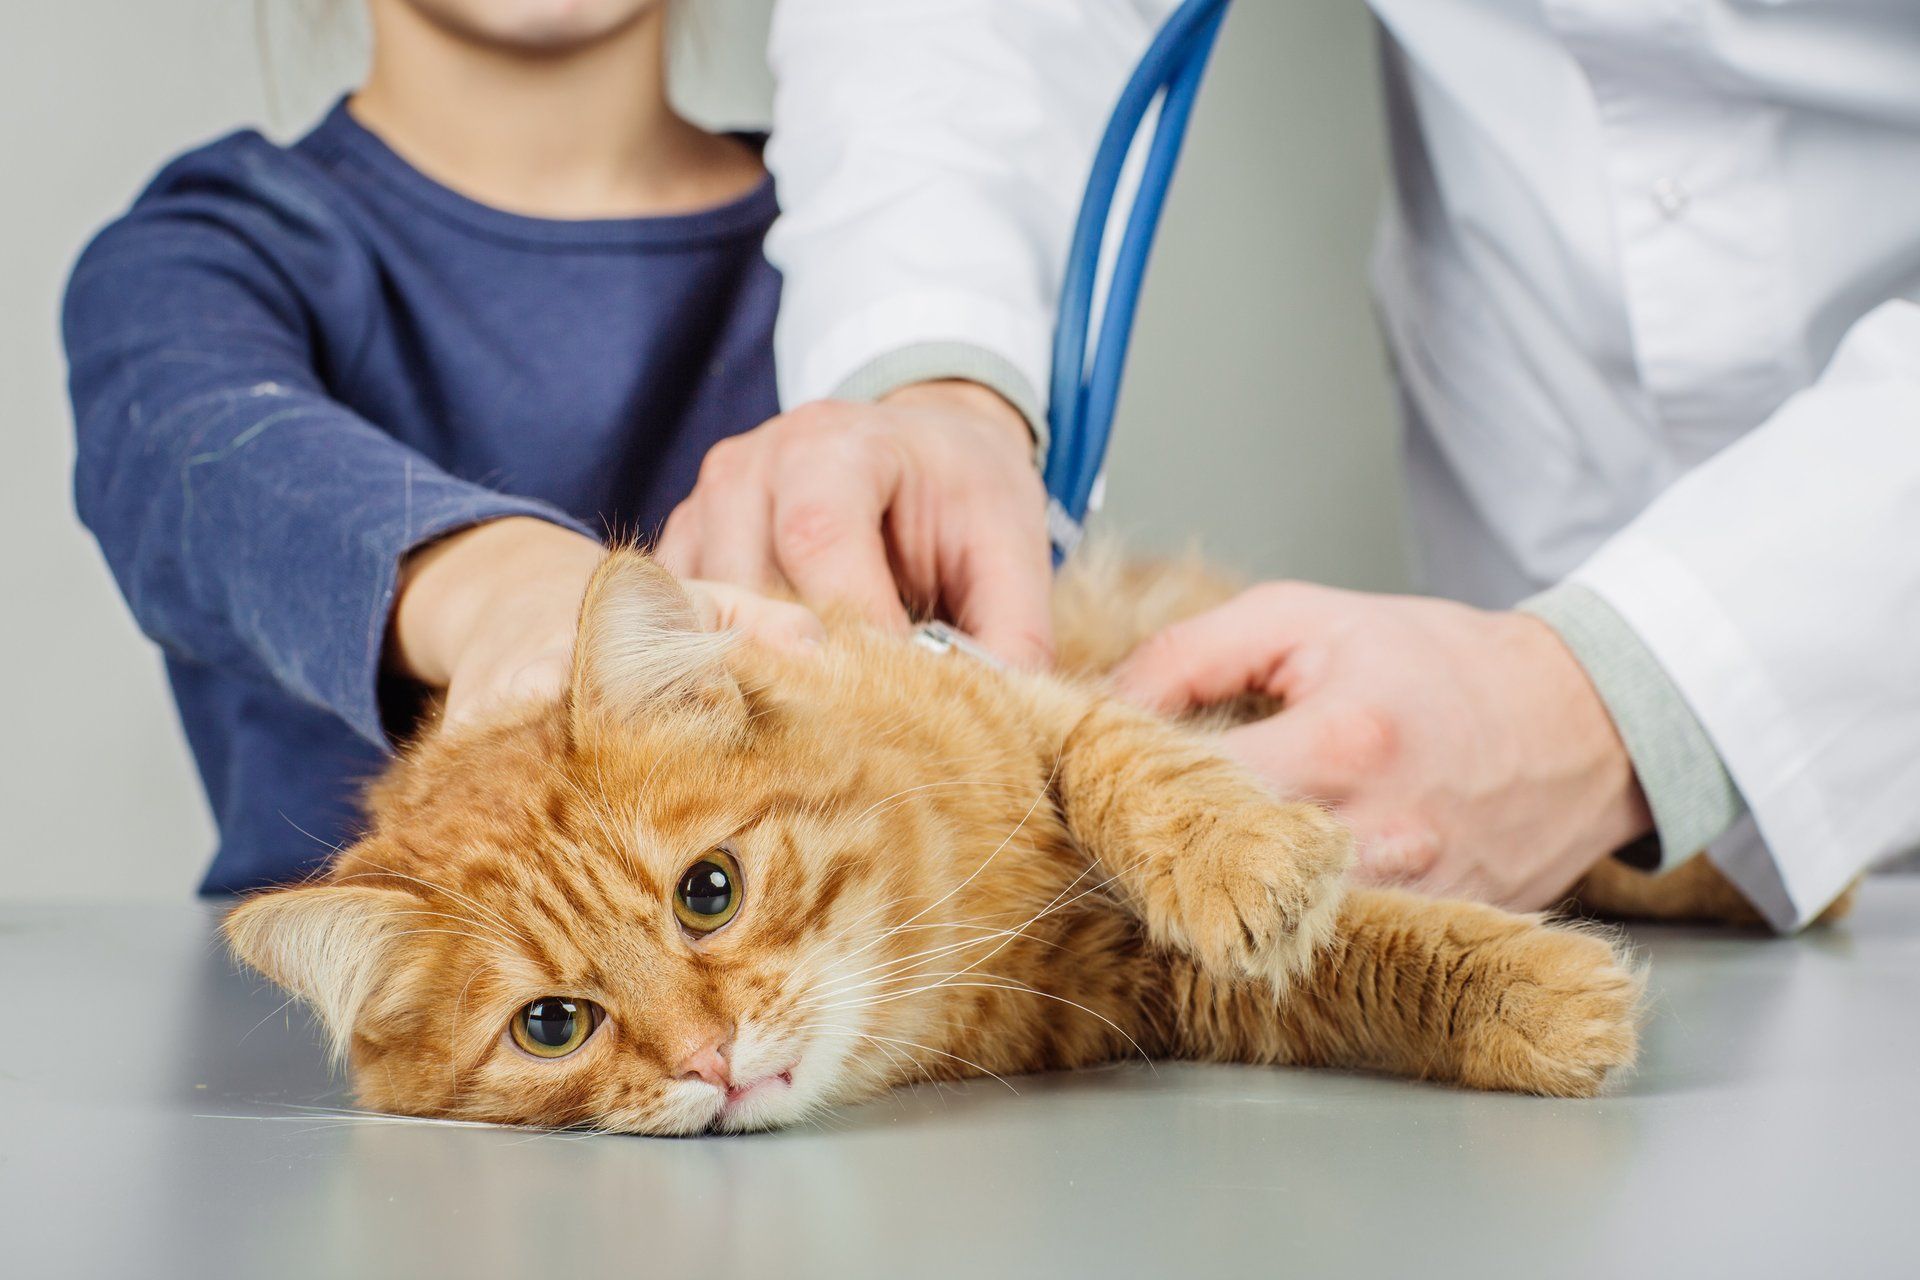 veteriner hekim kontrolünde sarı kedi